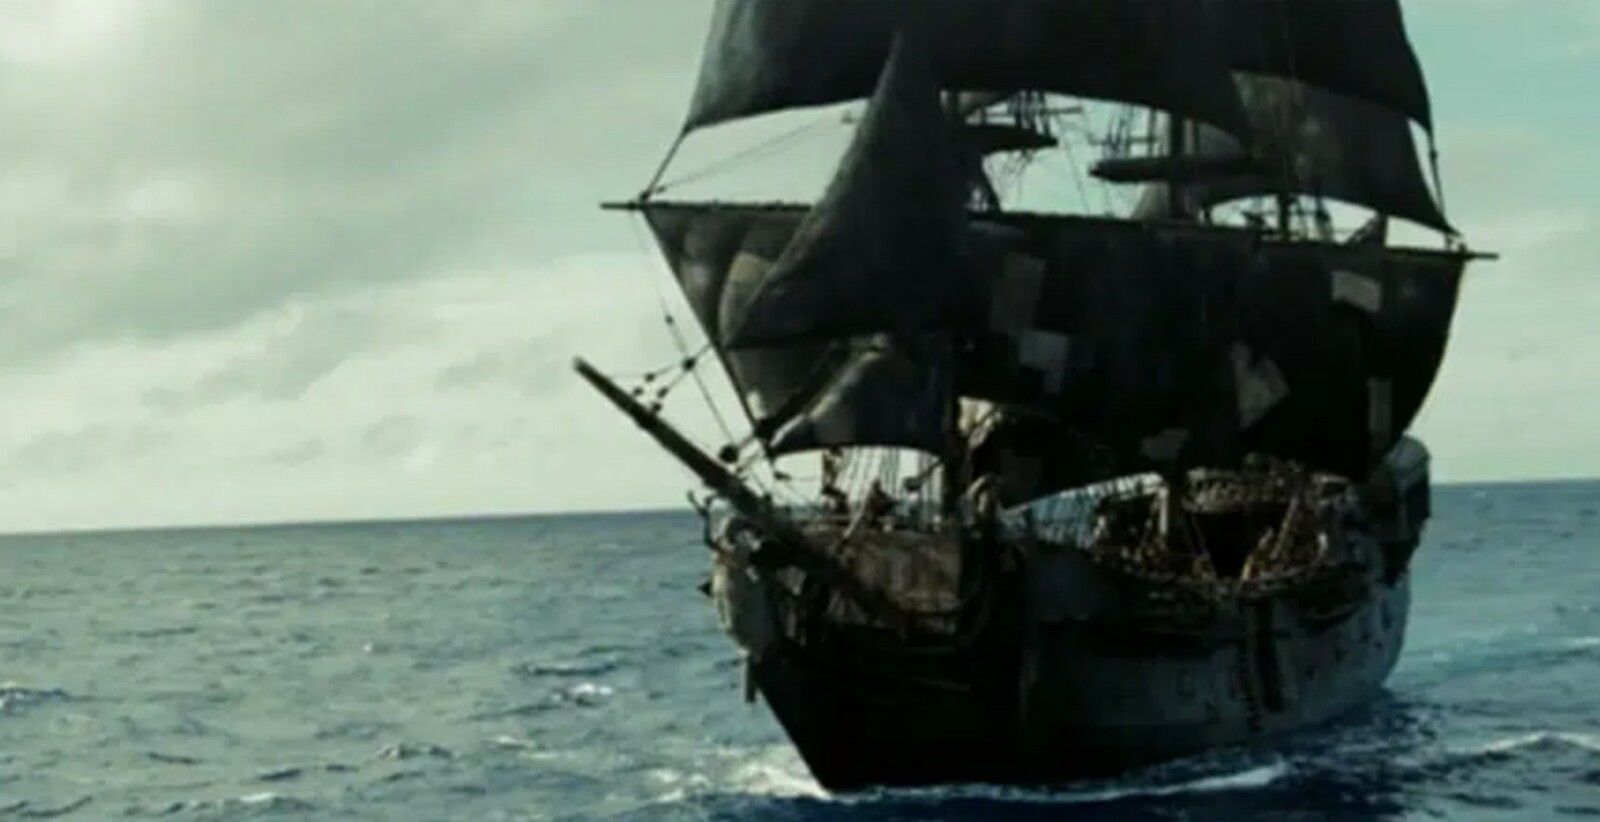 Bateaux pirates - Black Pearl, le plus connu et le plus récent